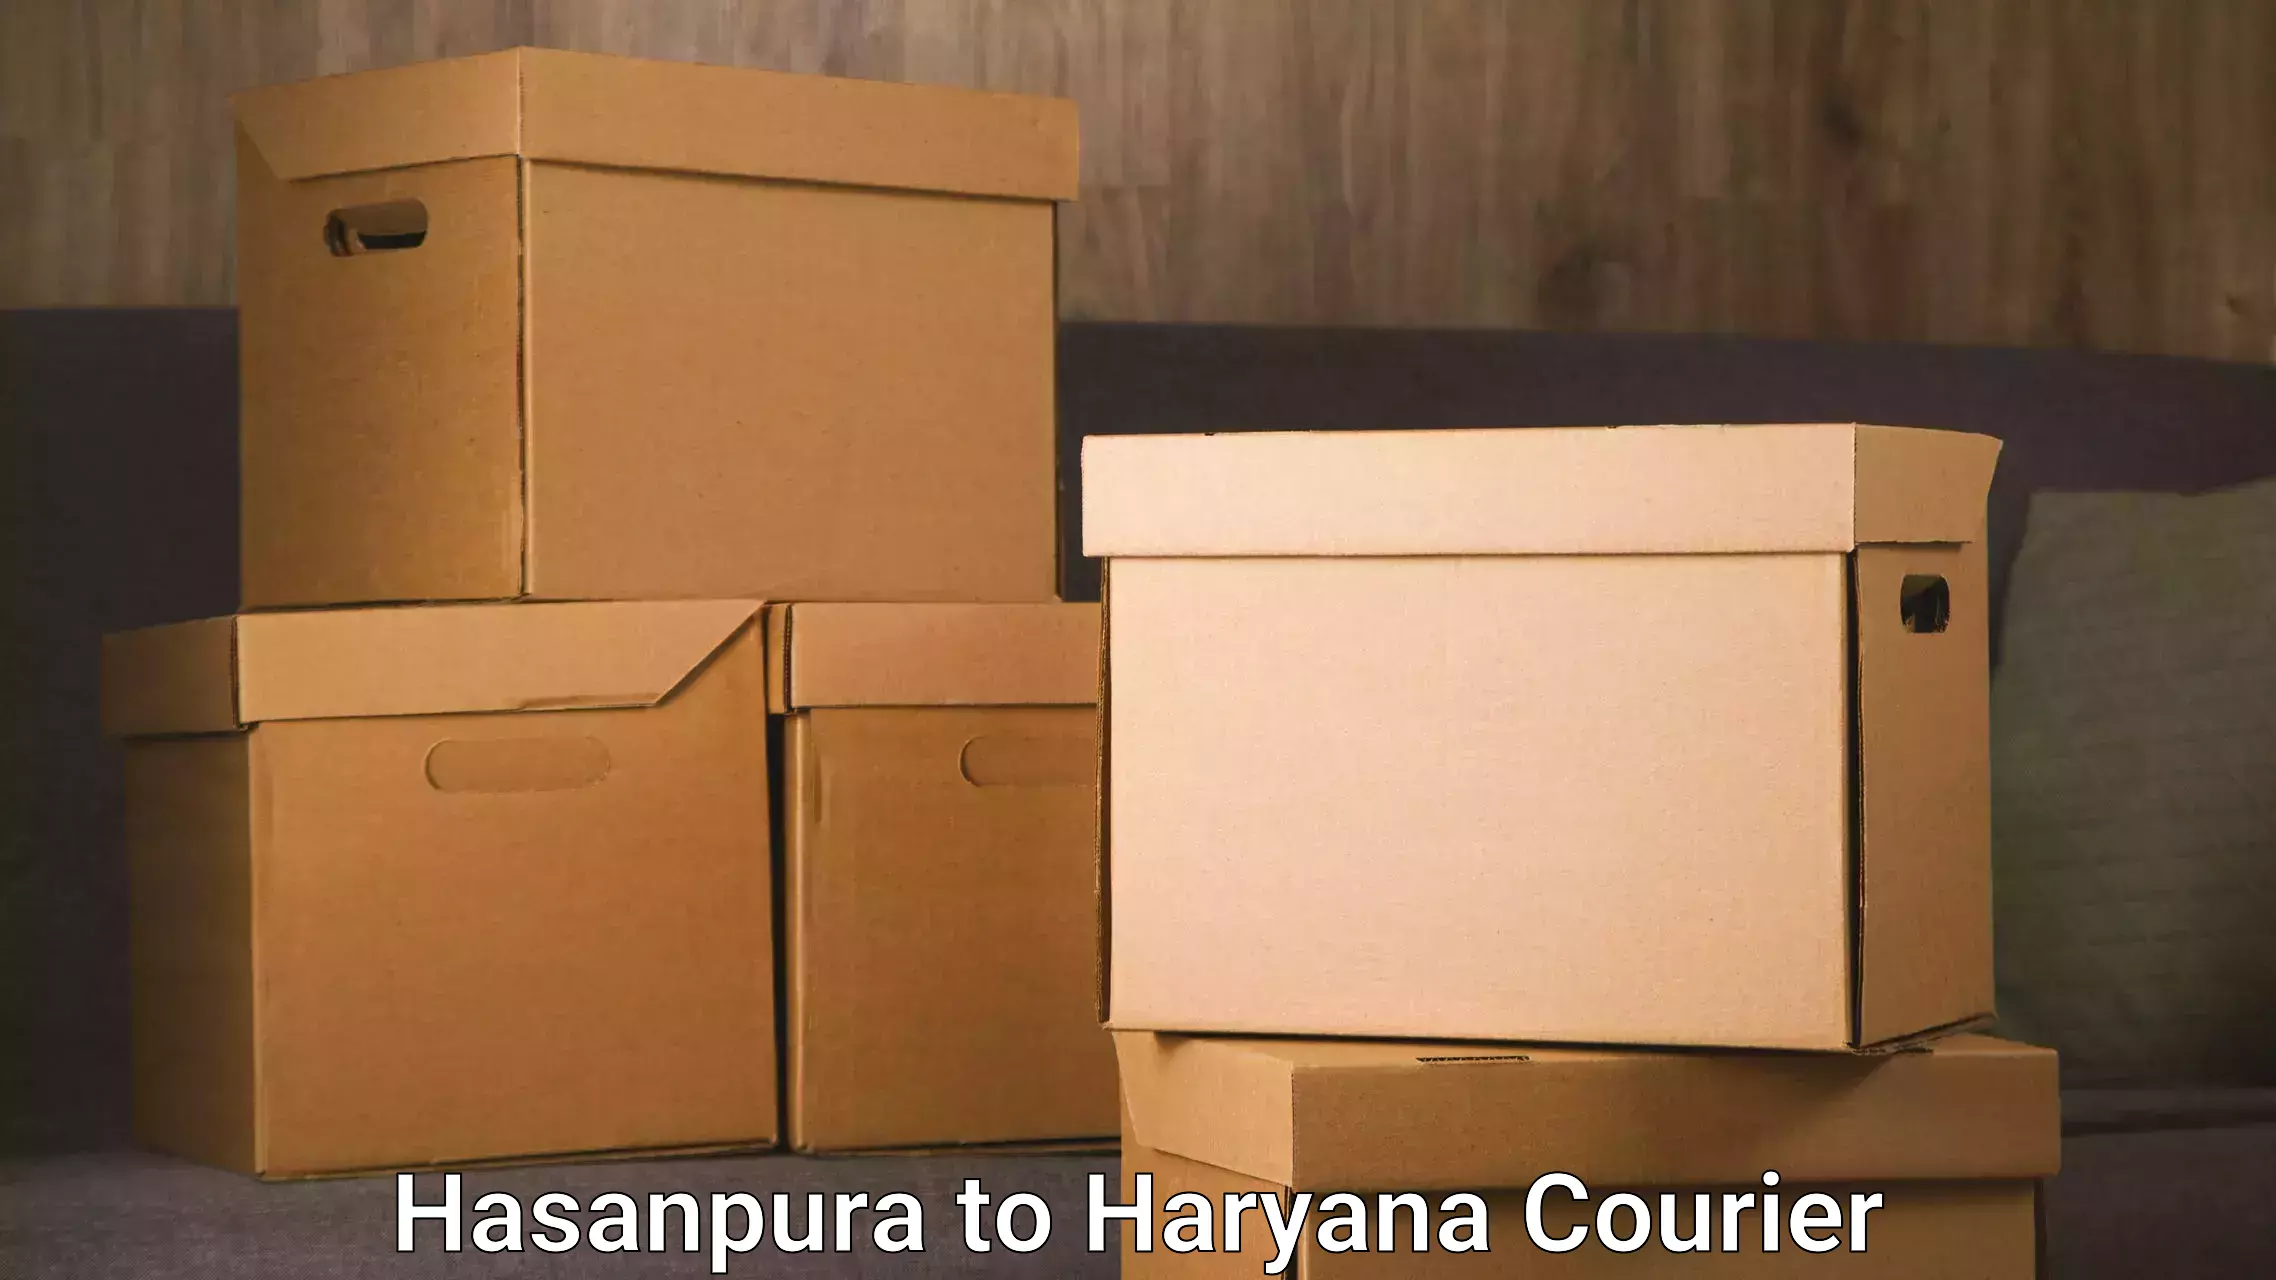 Efficient furniture shifting Hasanpura to Chaudhary Charan Singh Haryana Agricultural University Hisar